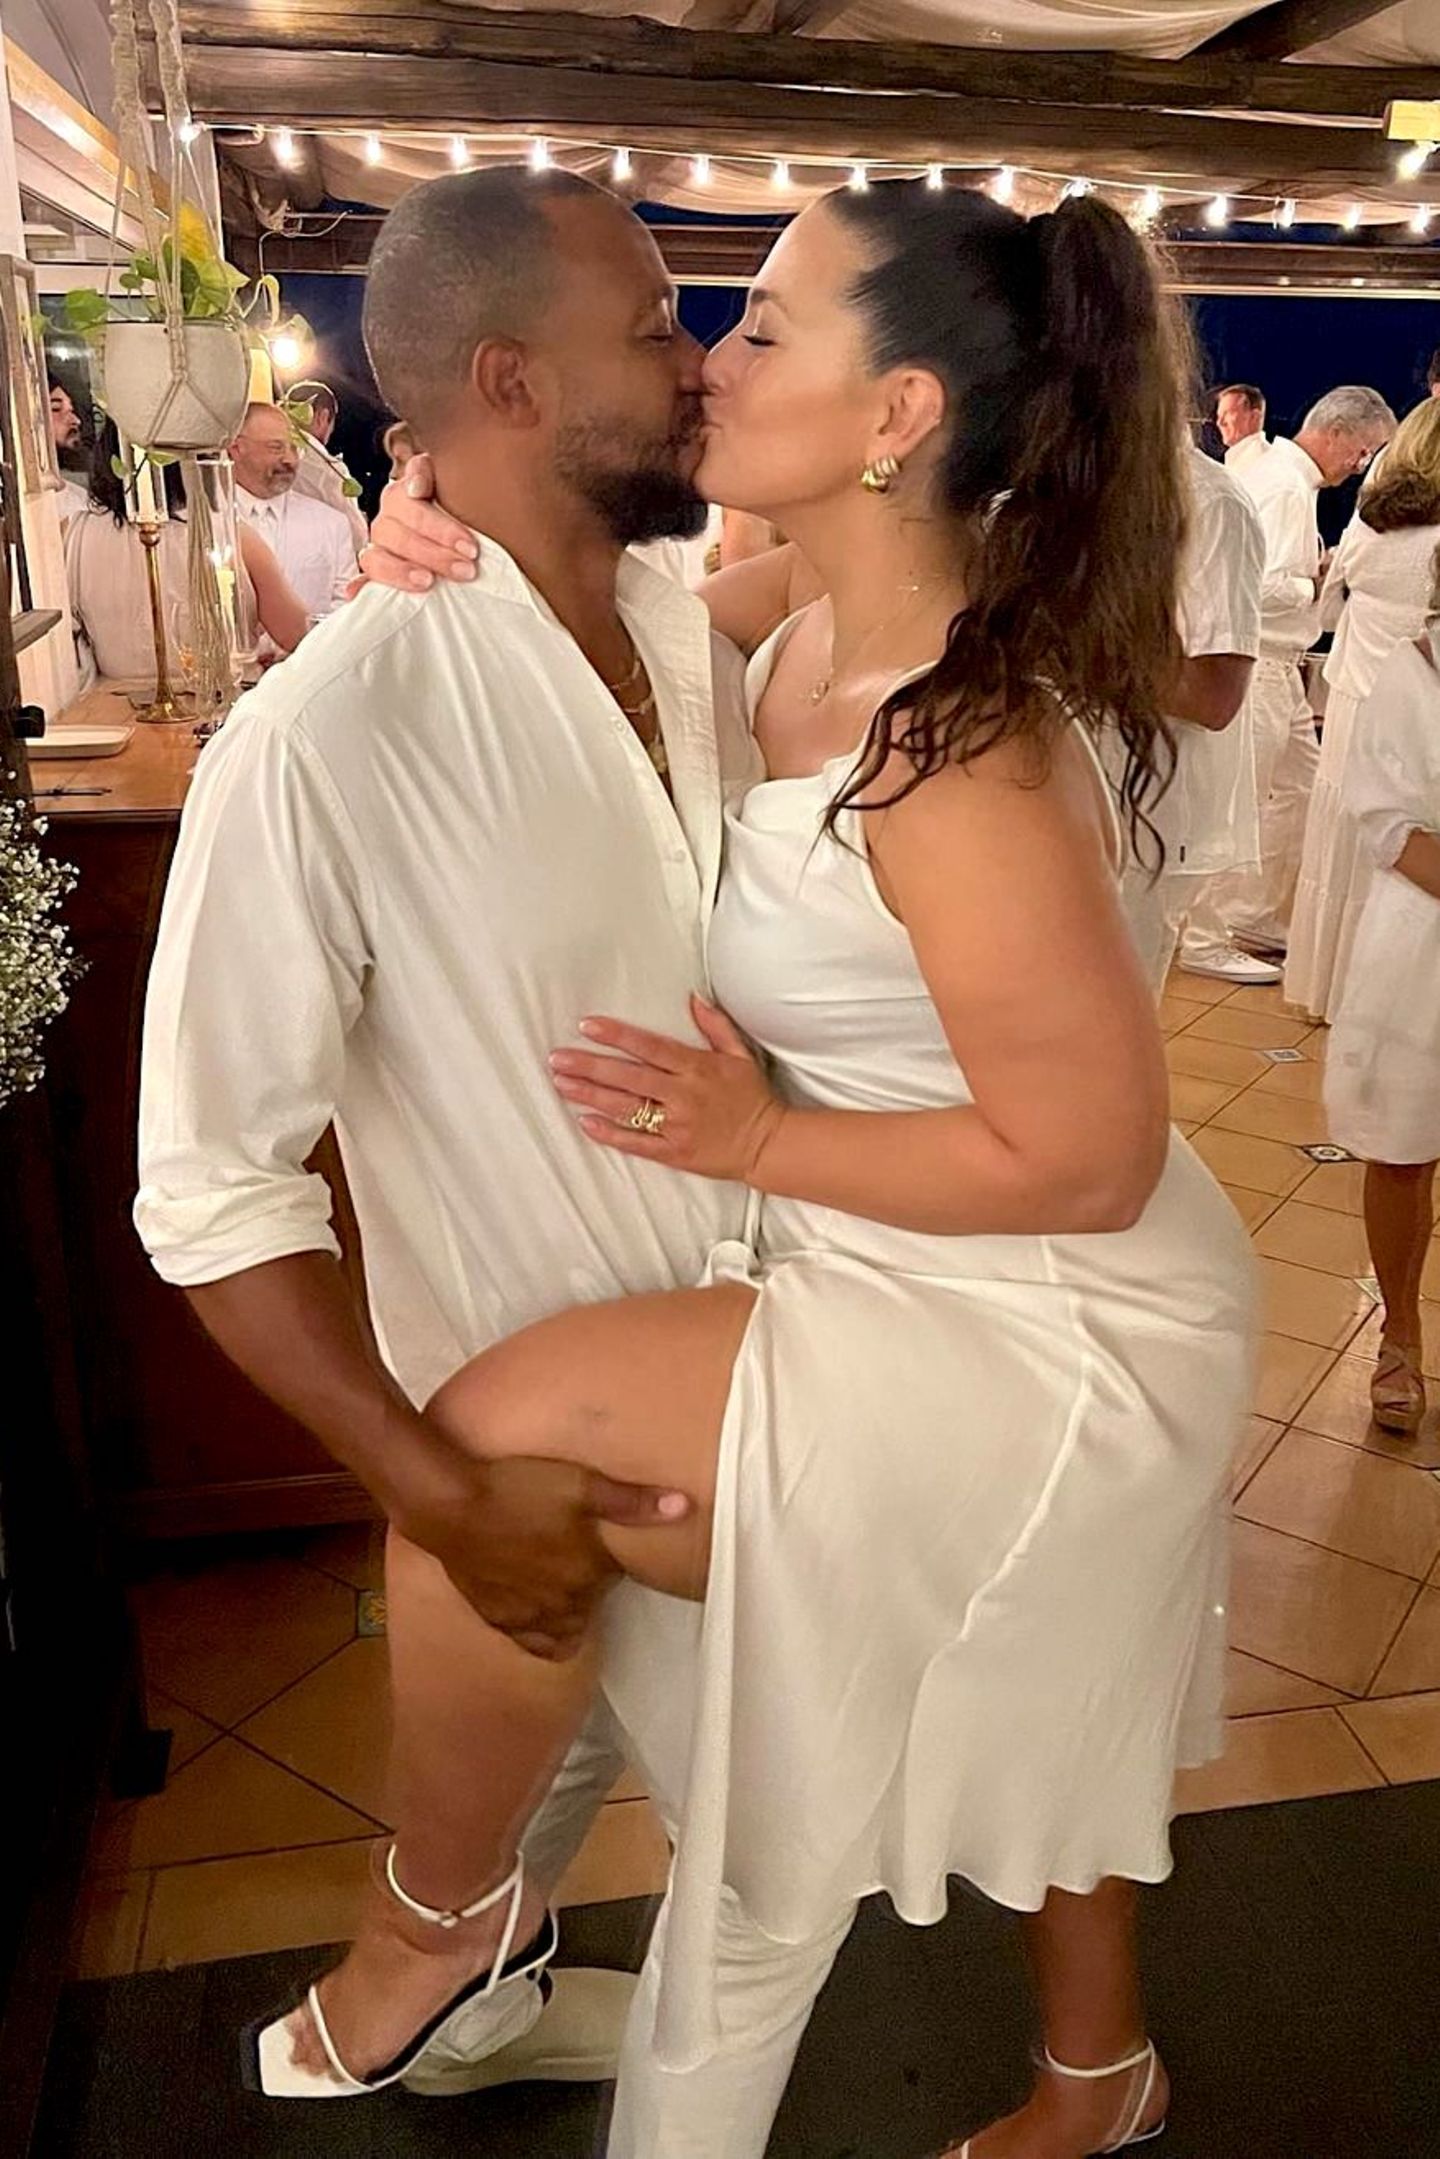 Total verliebt genießen Topmodel Ashley Graham und ihr Mann Justin Ervin "la dolce vita". Die beiden lassen es sich derzeit in der Nähe von Neapel mit Pizza, Pasta und süßen Küssen so richtig gutgehen.